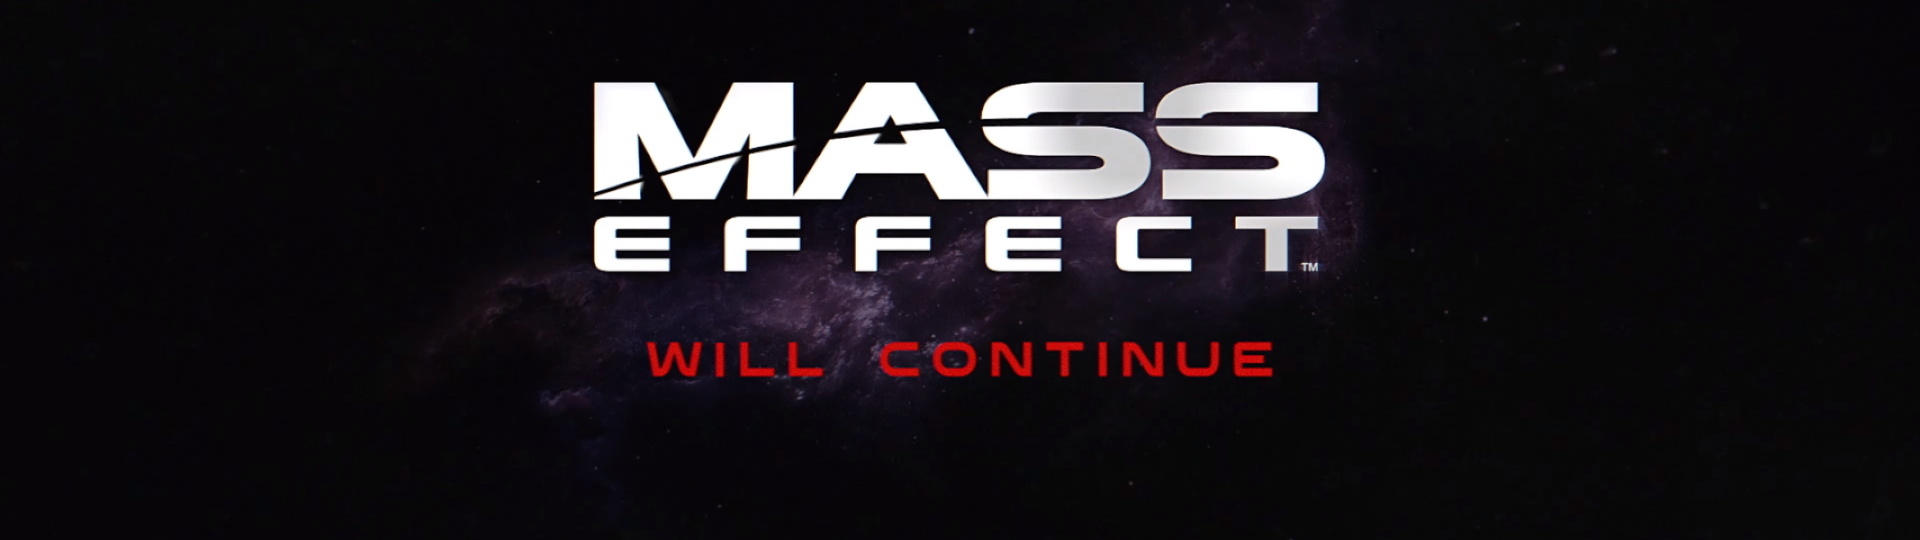 Mass Effect se vrací, zatím jen v oficiálním teaseru | Videa